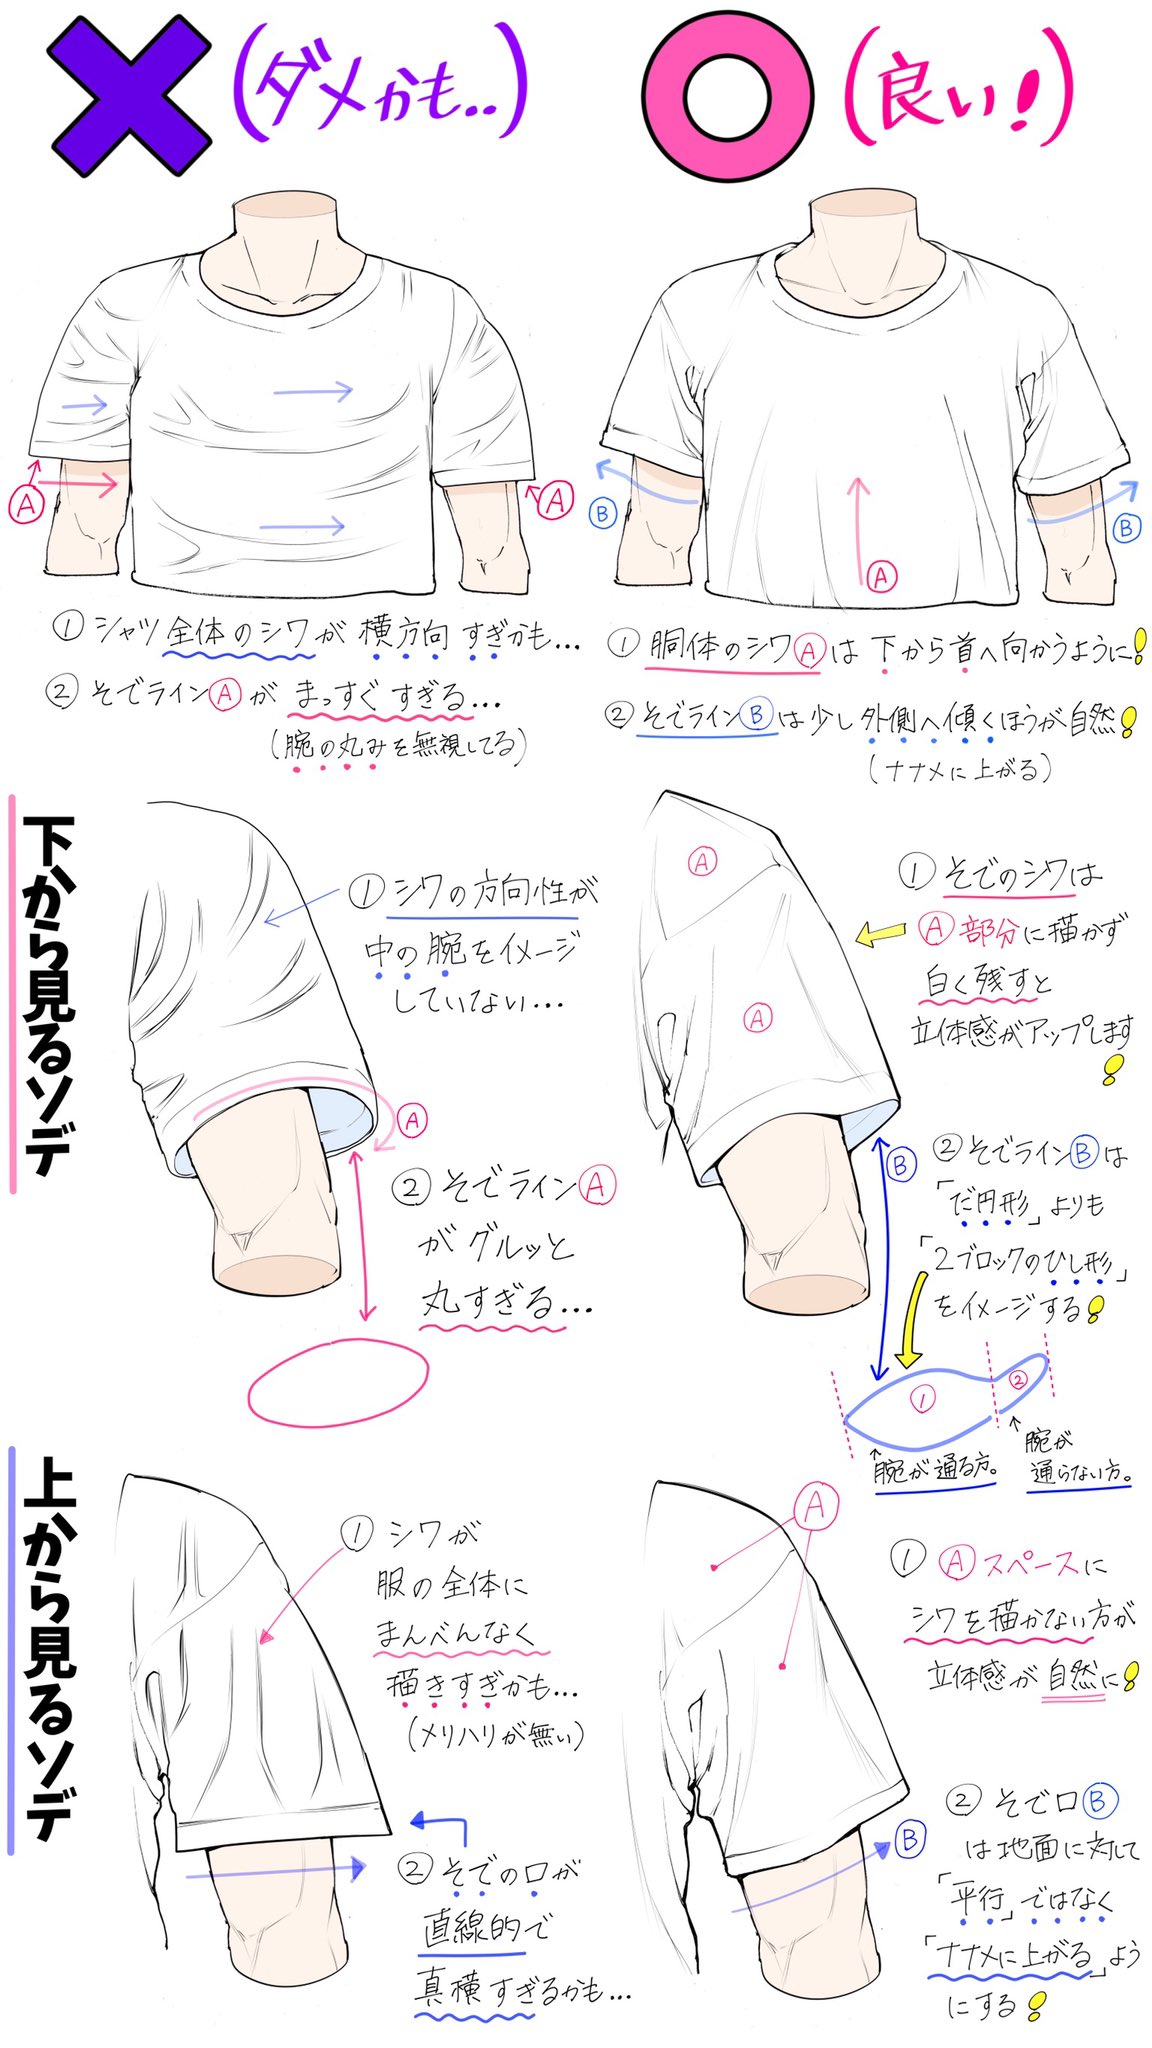 吉村拓也 イラスト講座 在 Twitter 上 Tシャツのシワ感が苦手で描けない シャツの構図アングルが難しい って人ほど上達しやすい Tシャツ服男子の描き方 講座 T Co Poj1lw50qf Twitter